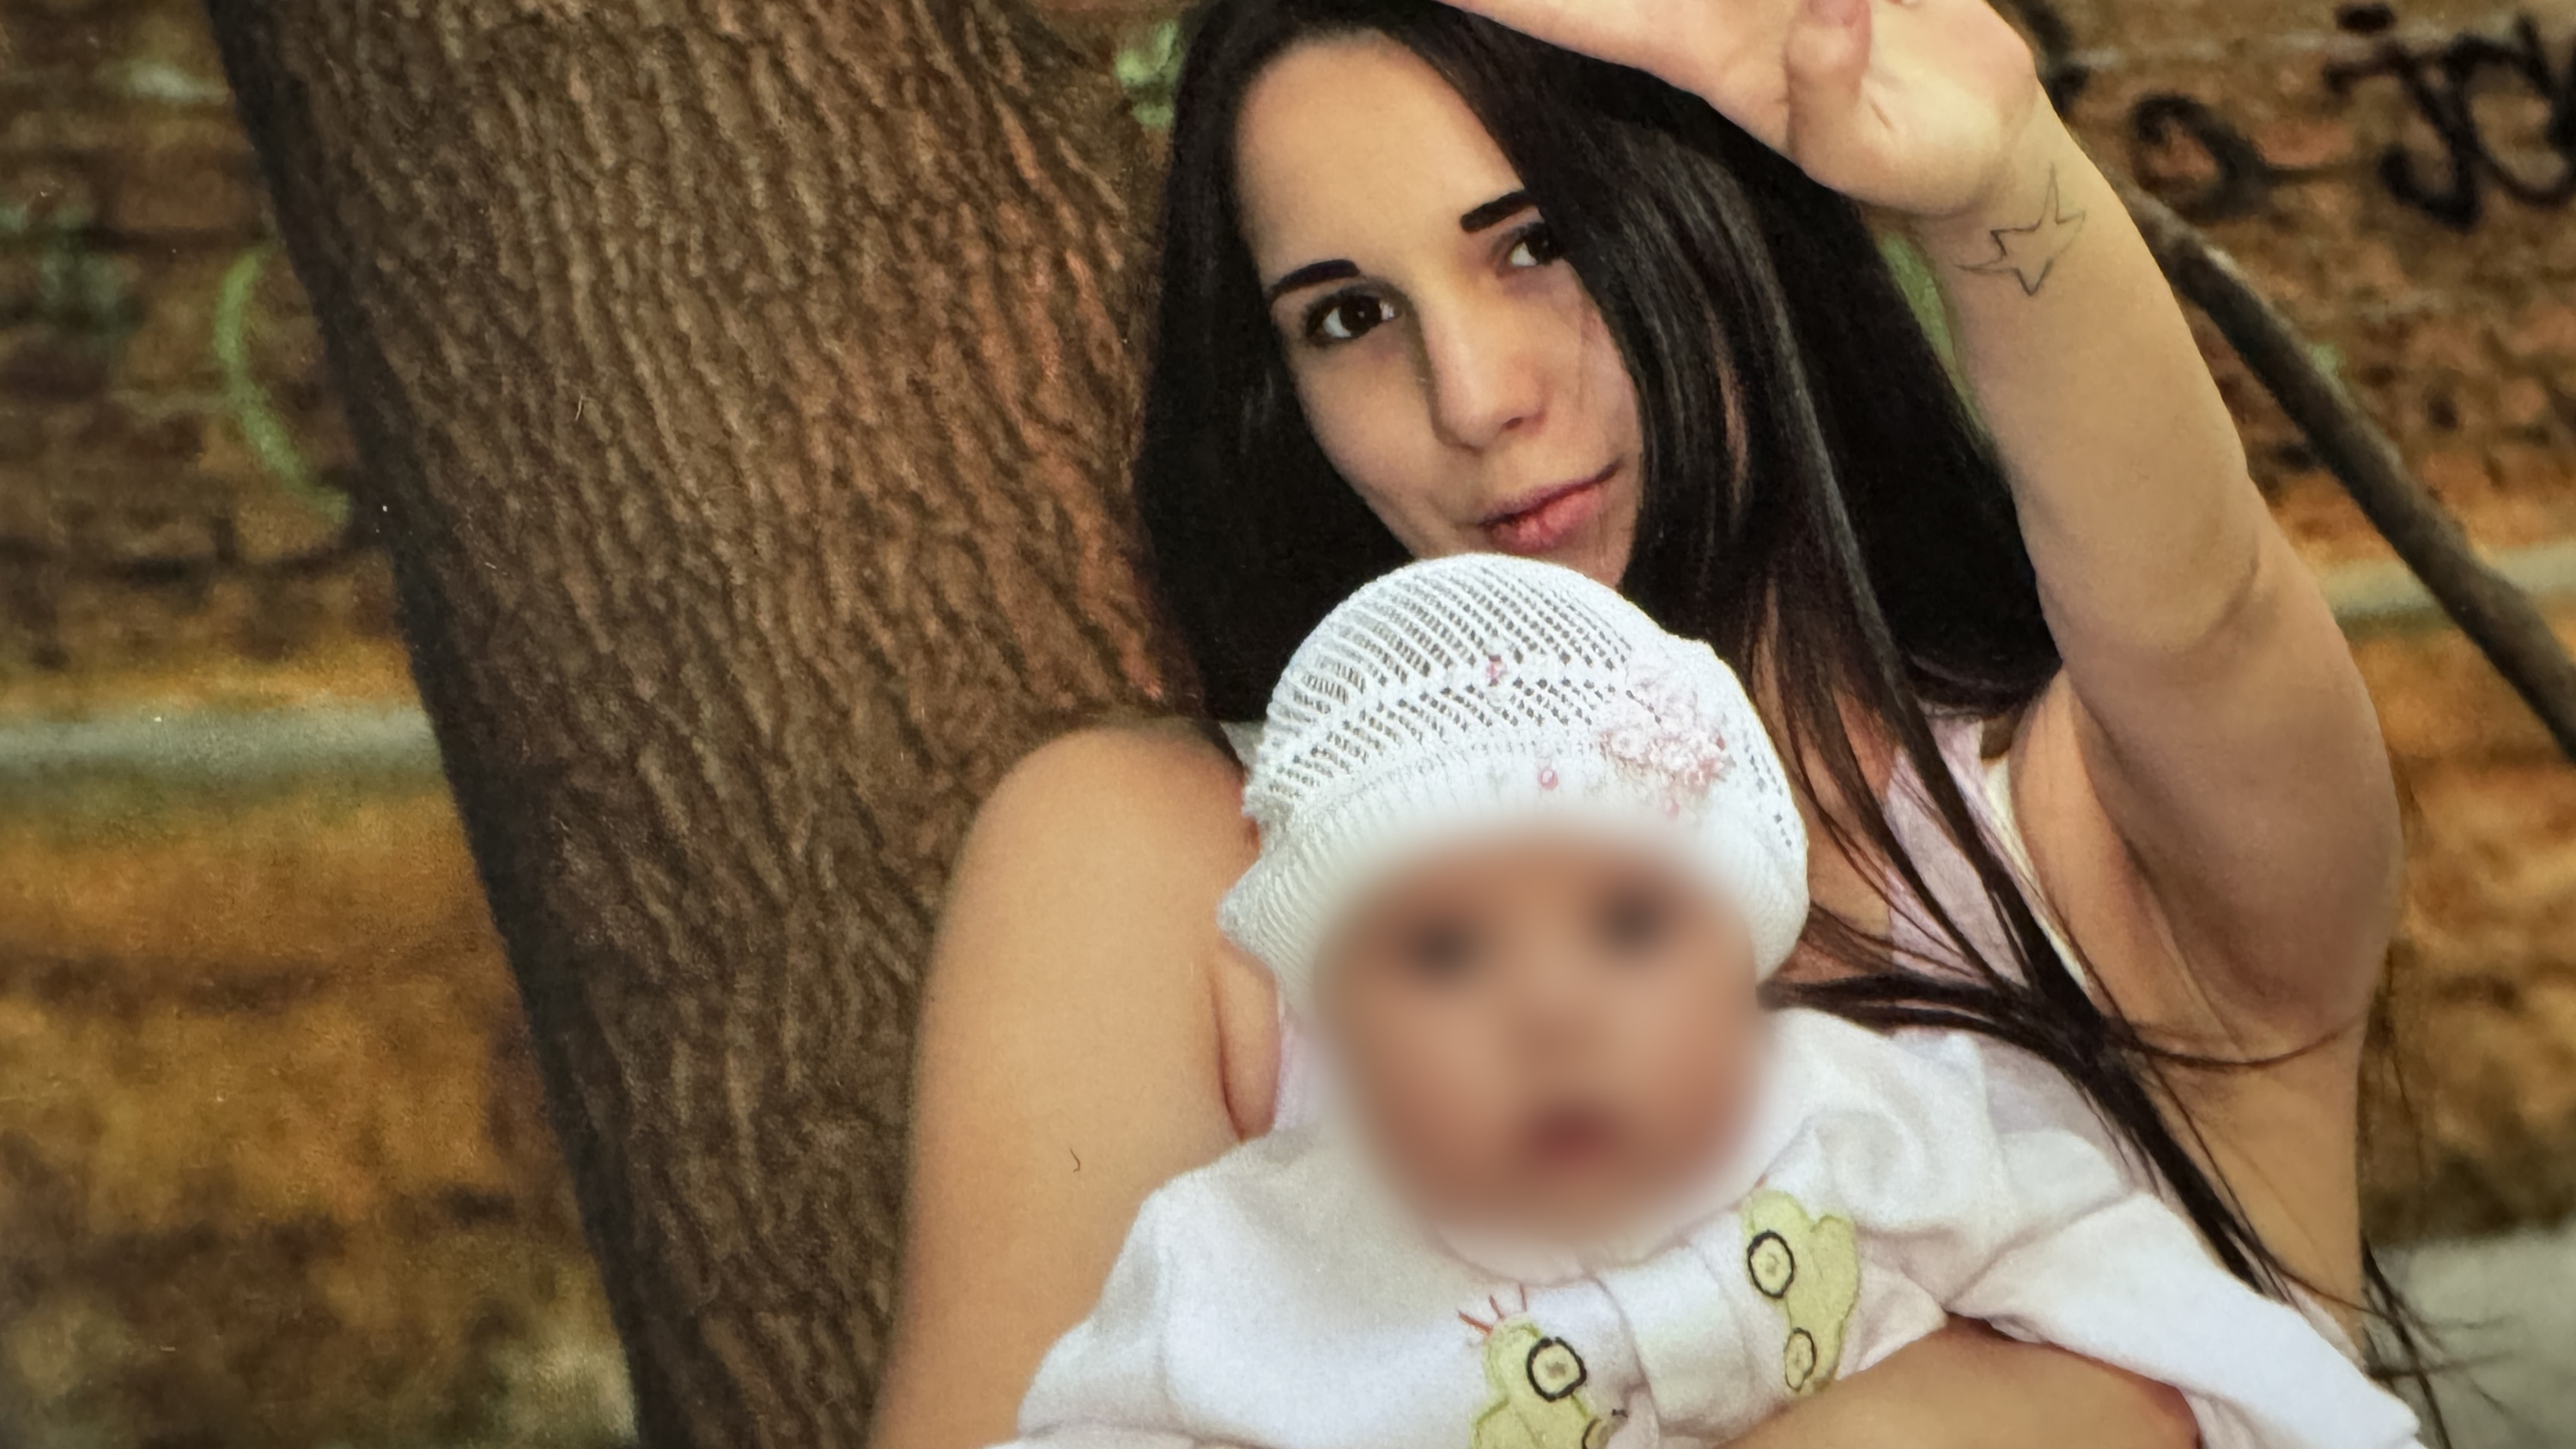 Молодая мама из Екатеринбурга умерла в двадцать лет. Родня начала войну за ее дочку: видео